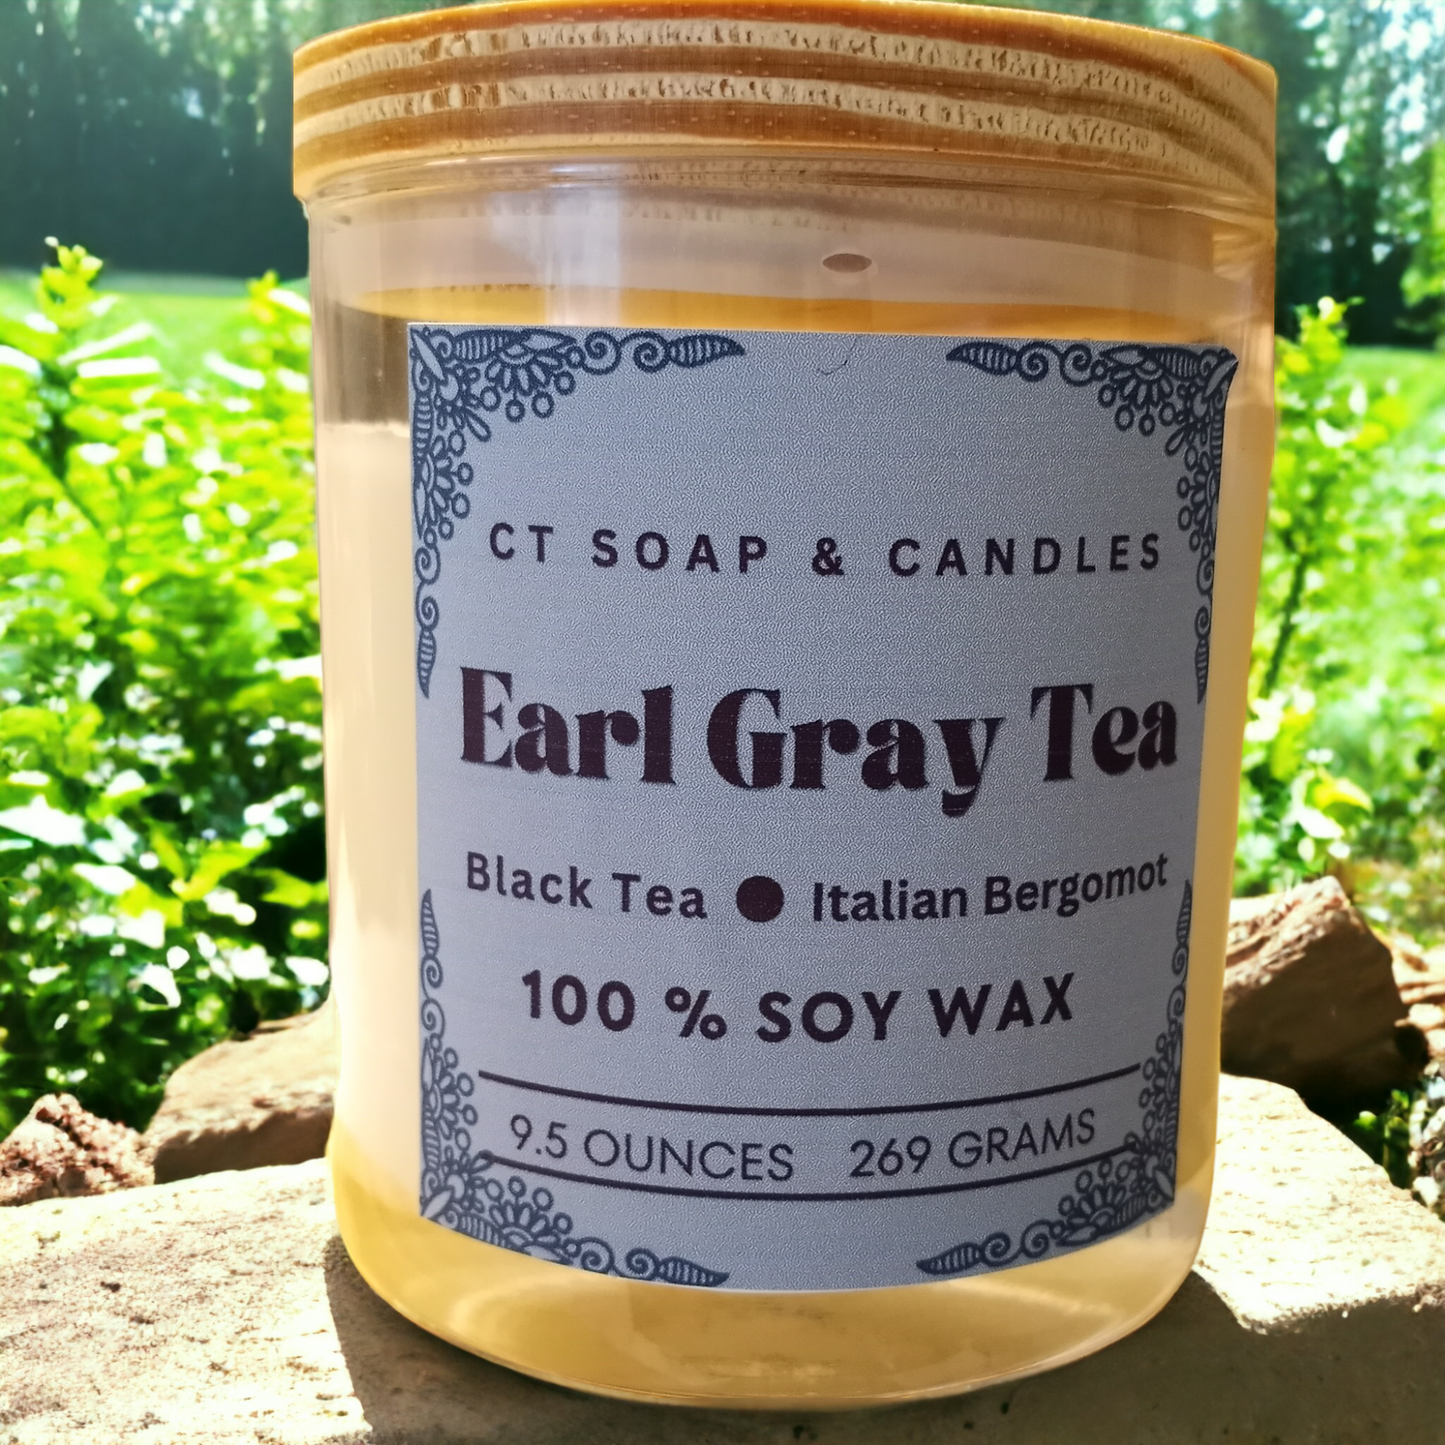 Earl Gray Tea Artisanal Soy Candle